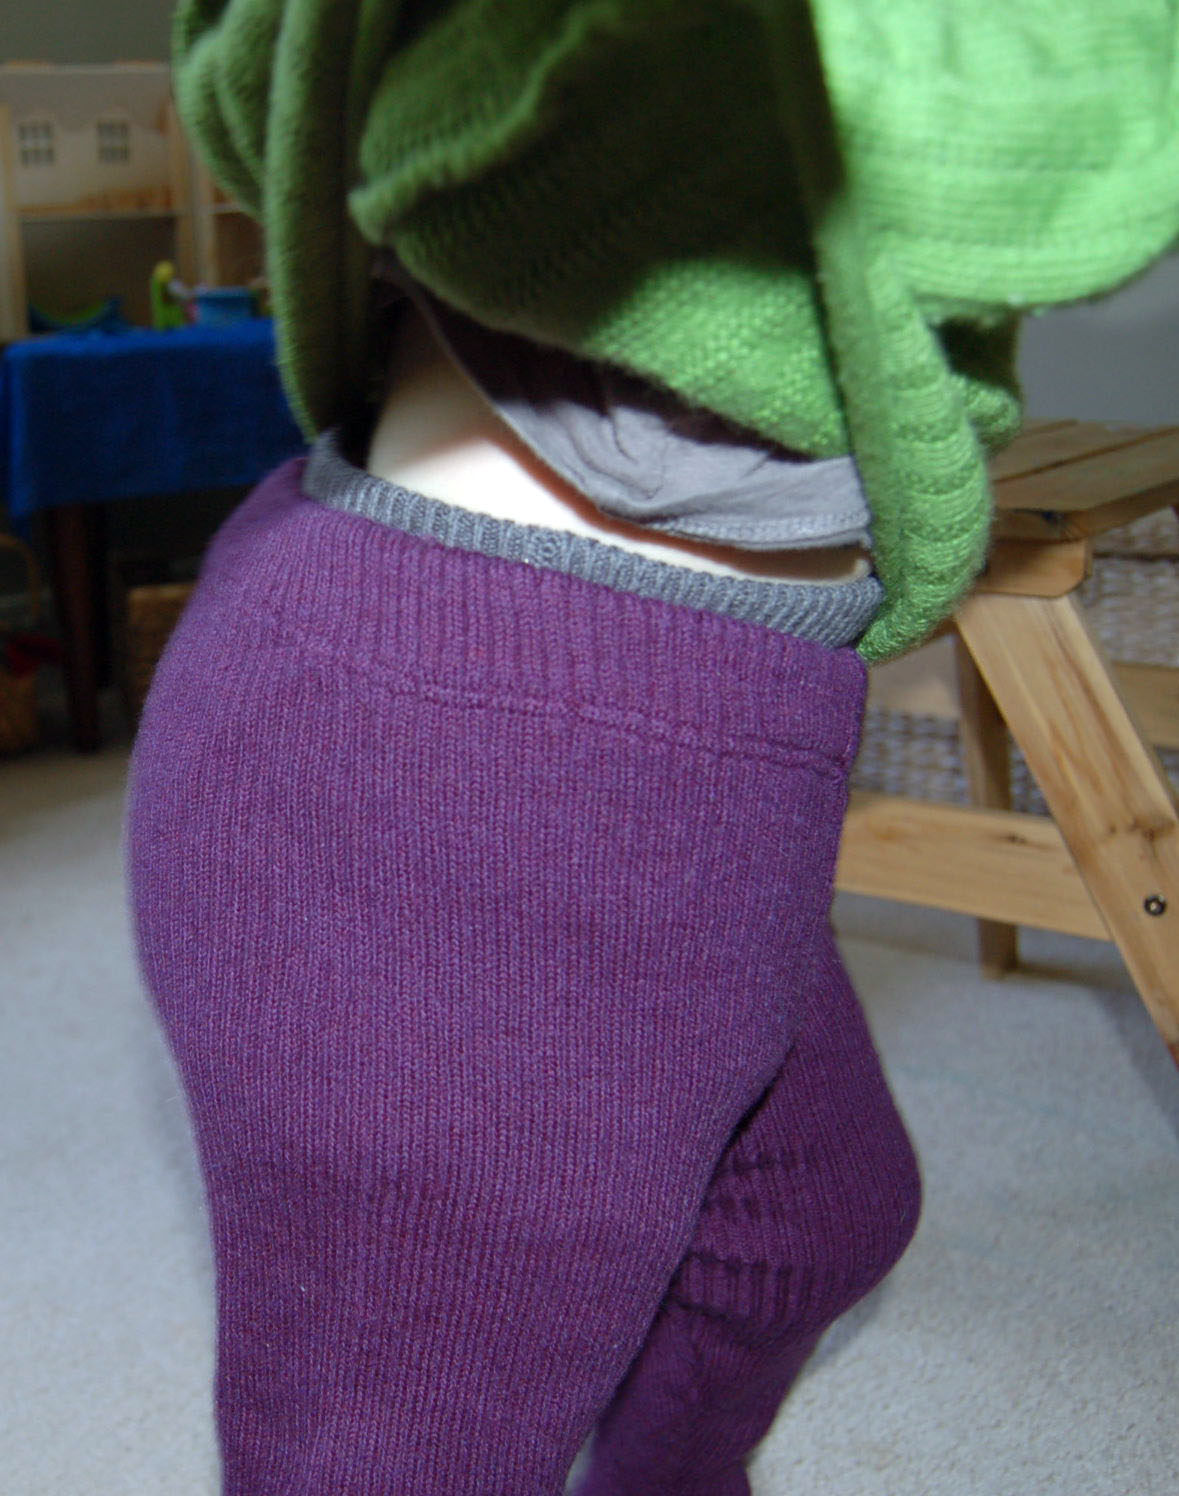 I love Diaper Cover MERINO WOOL baby infant longies leggings knitted knit custom 